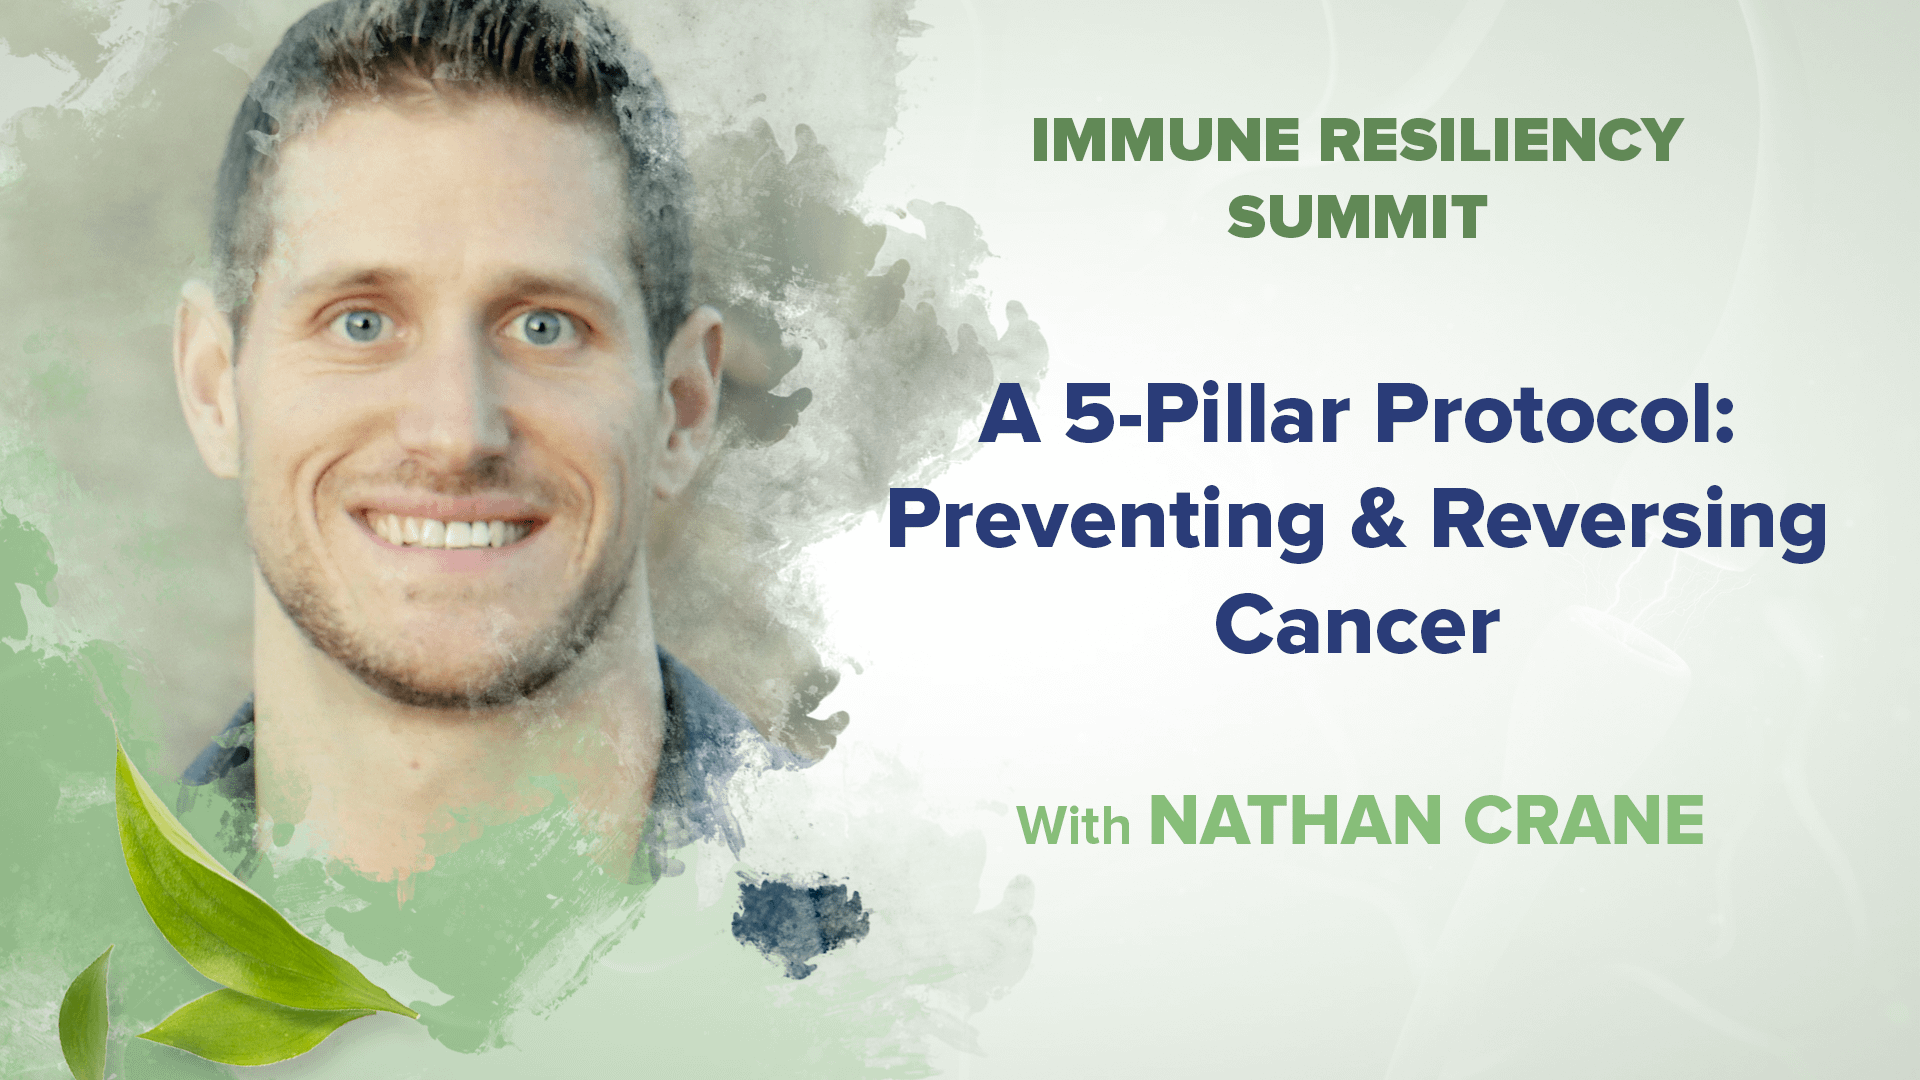 A 5-Pillar Protocol: Preventing & Reversing Cancer